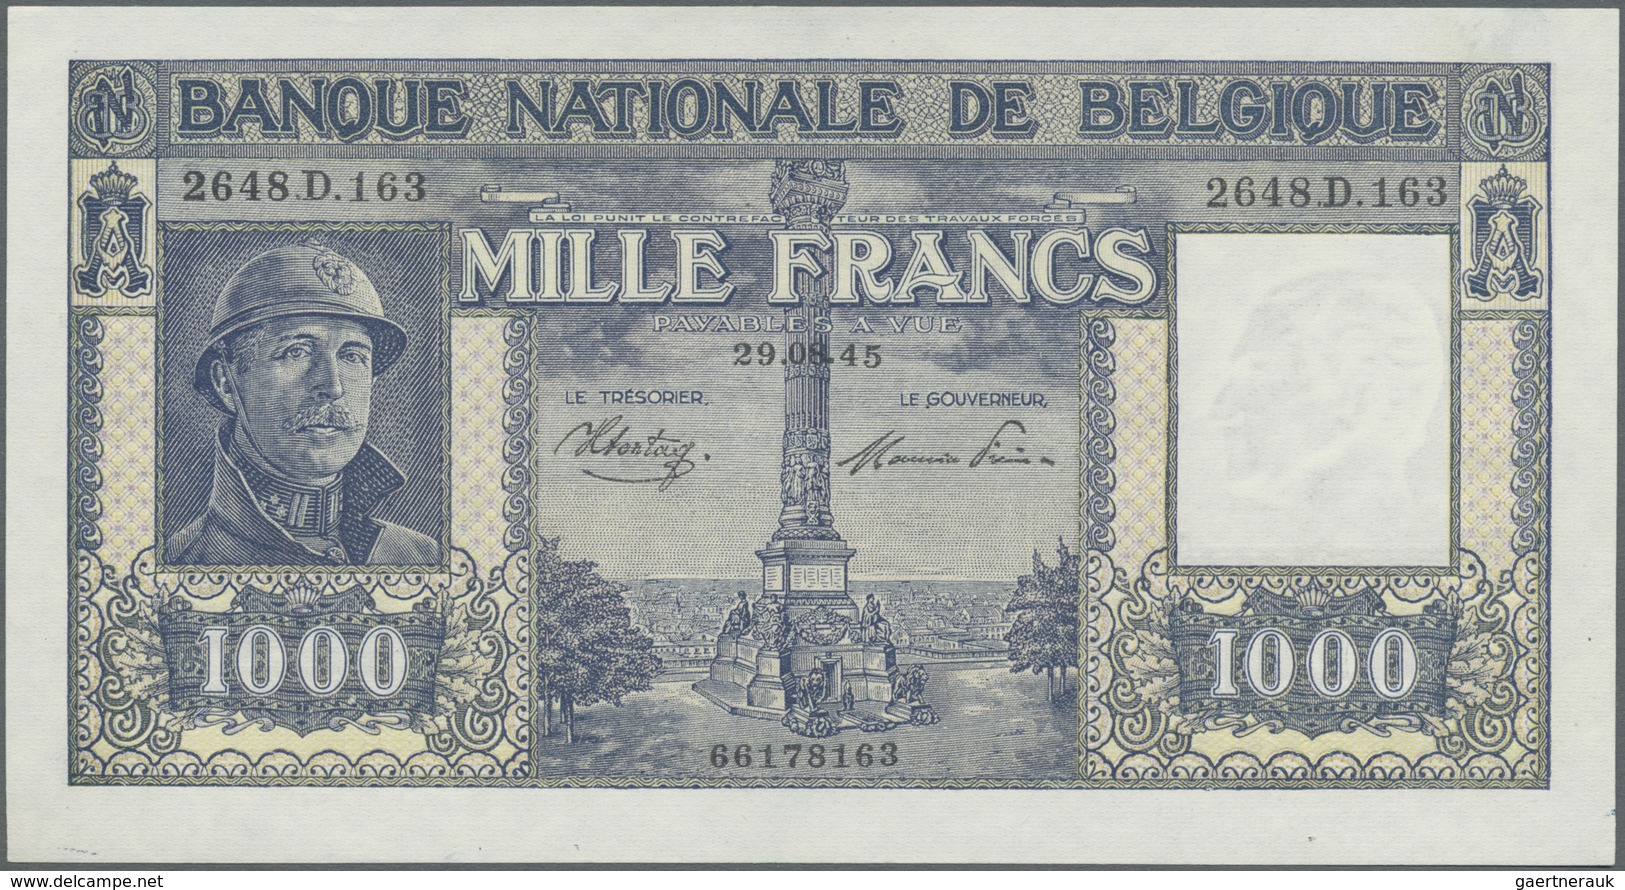 Belgium / Belgien: 1000 Francs 1945 P. 128b, In Condition: AUNC. - [ 1] …-1830: Vor Der Unabhängigkeit